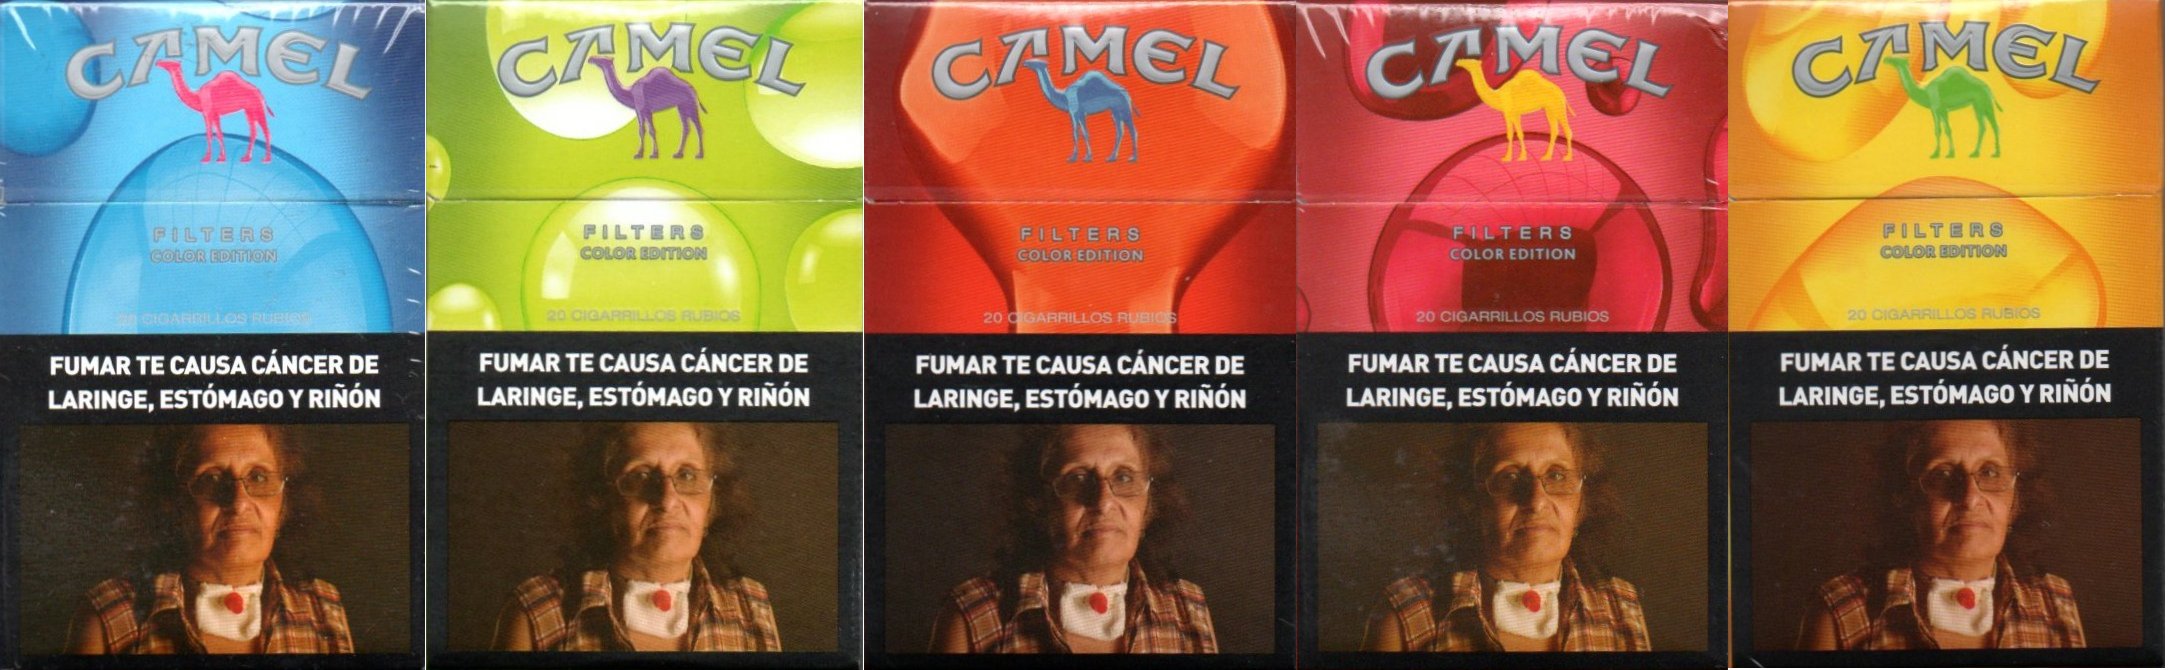 Camel Colores Edición Especial 2020